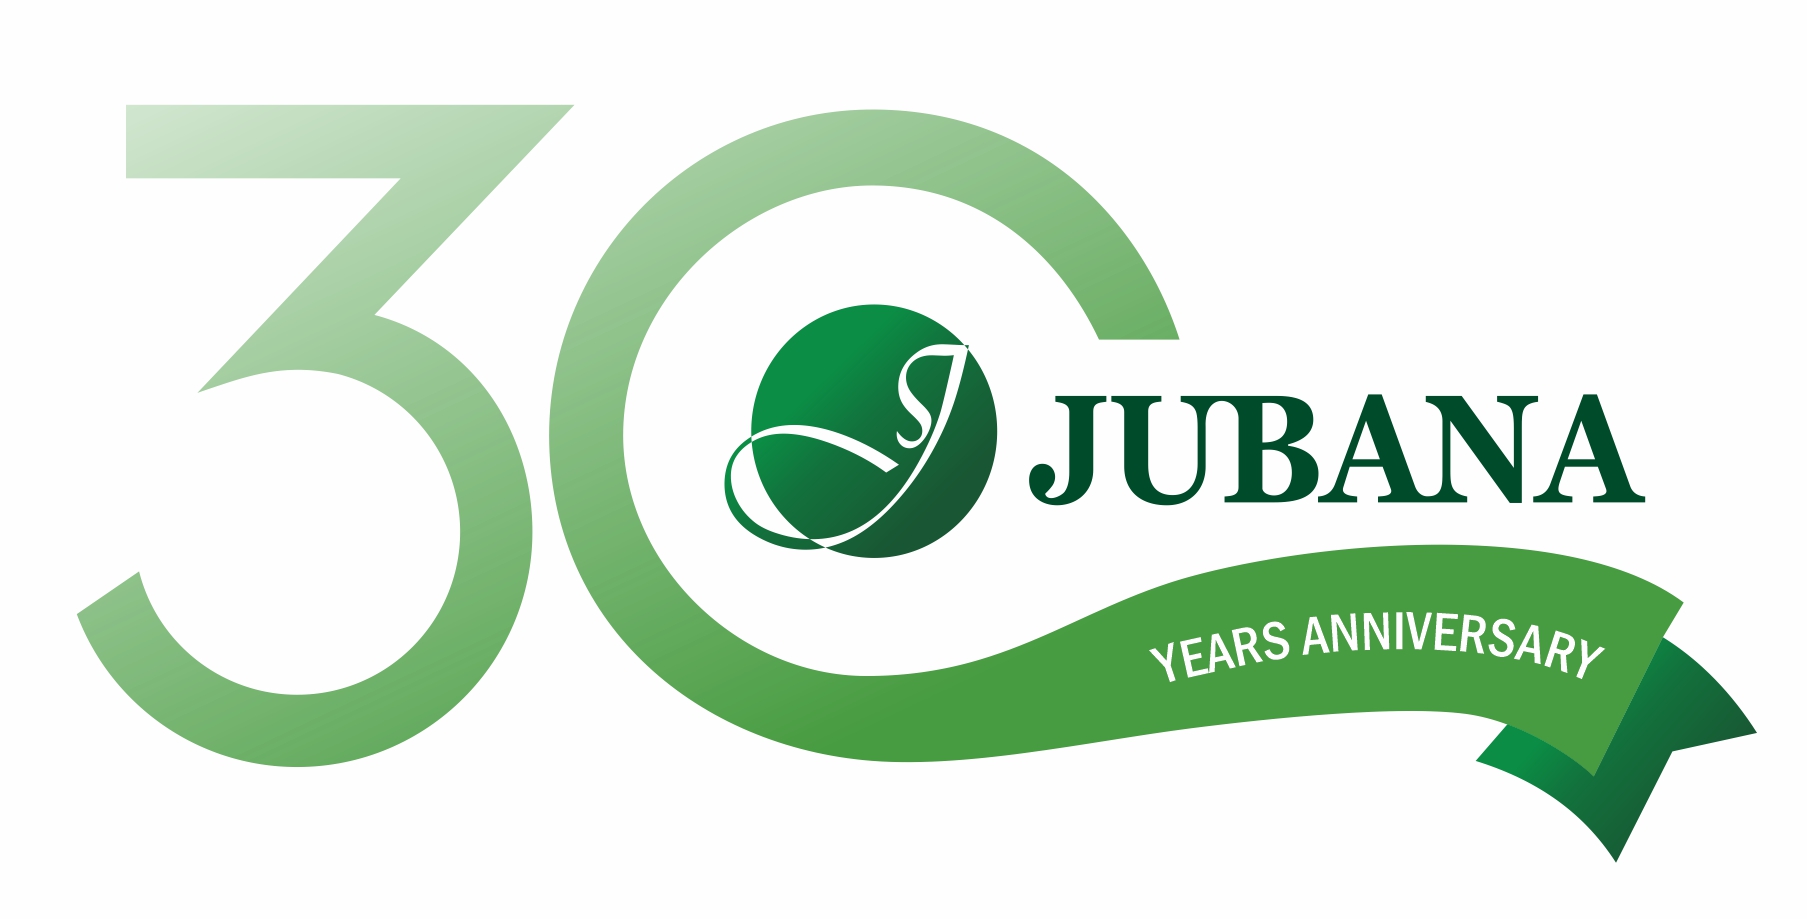 Jubana Anniversary 30